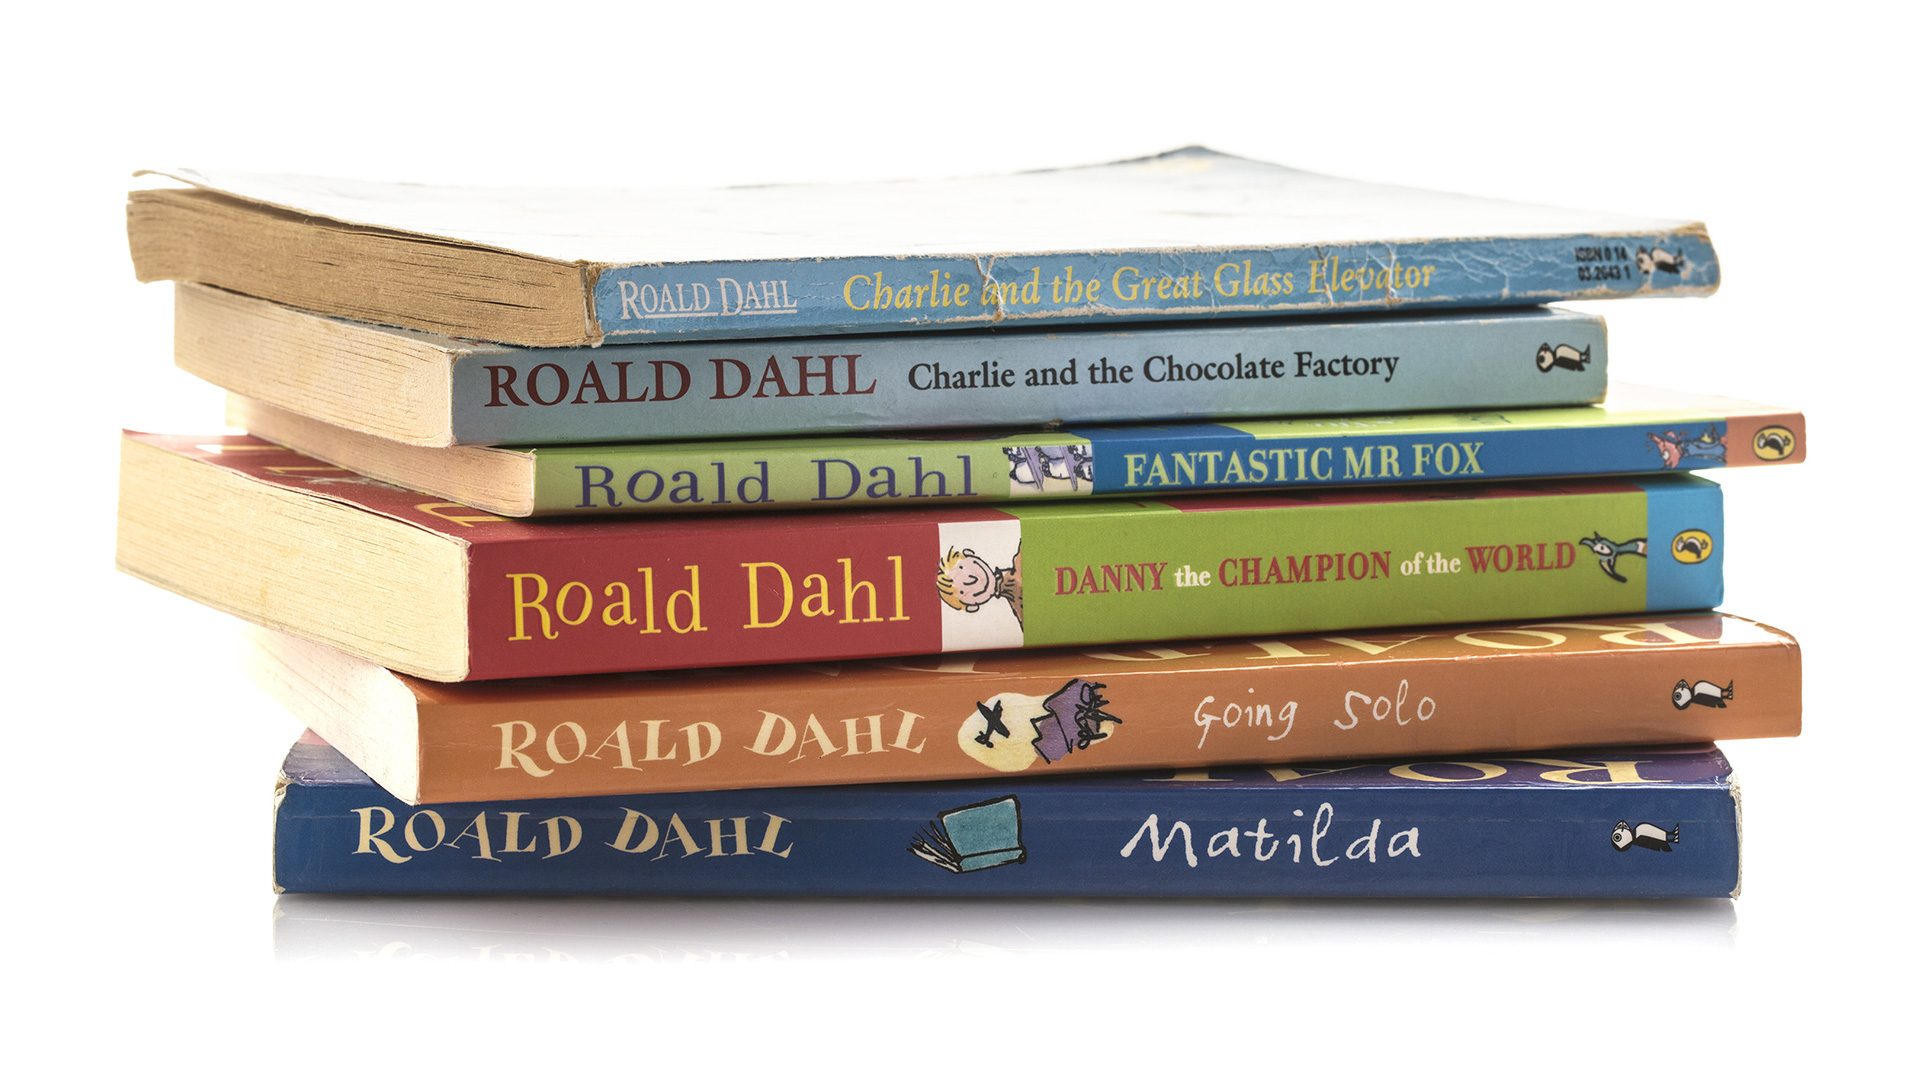 Roald Dahl publisher to release original uncensored versions after public backlash